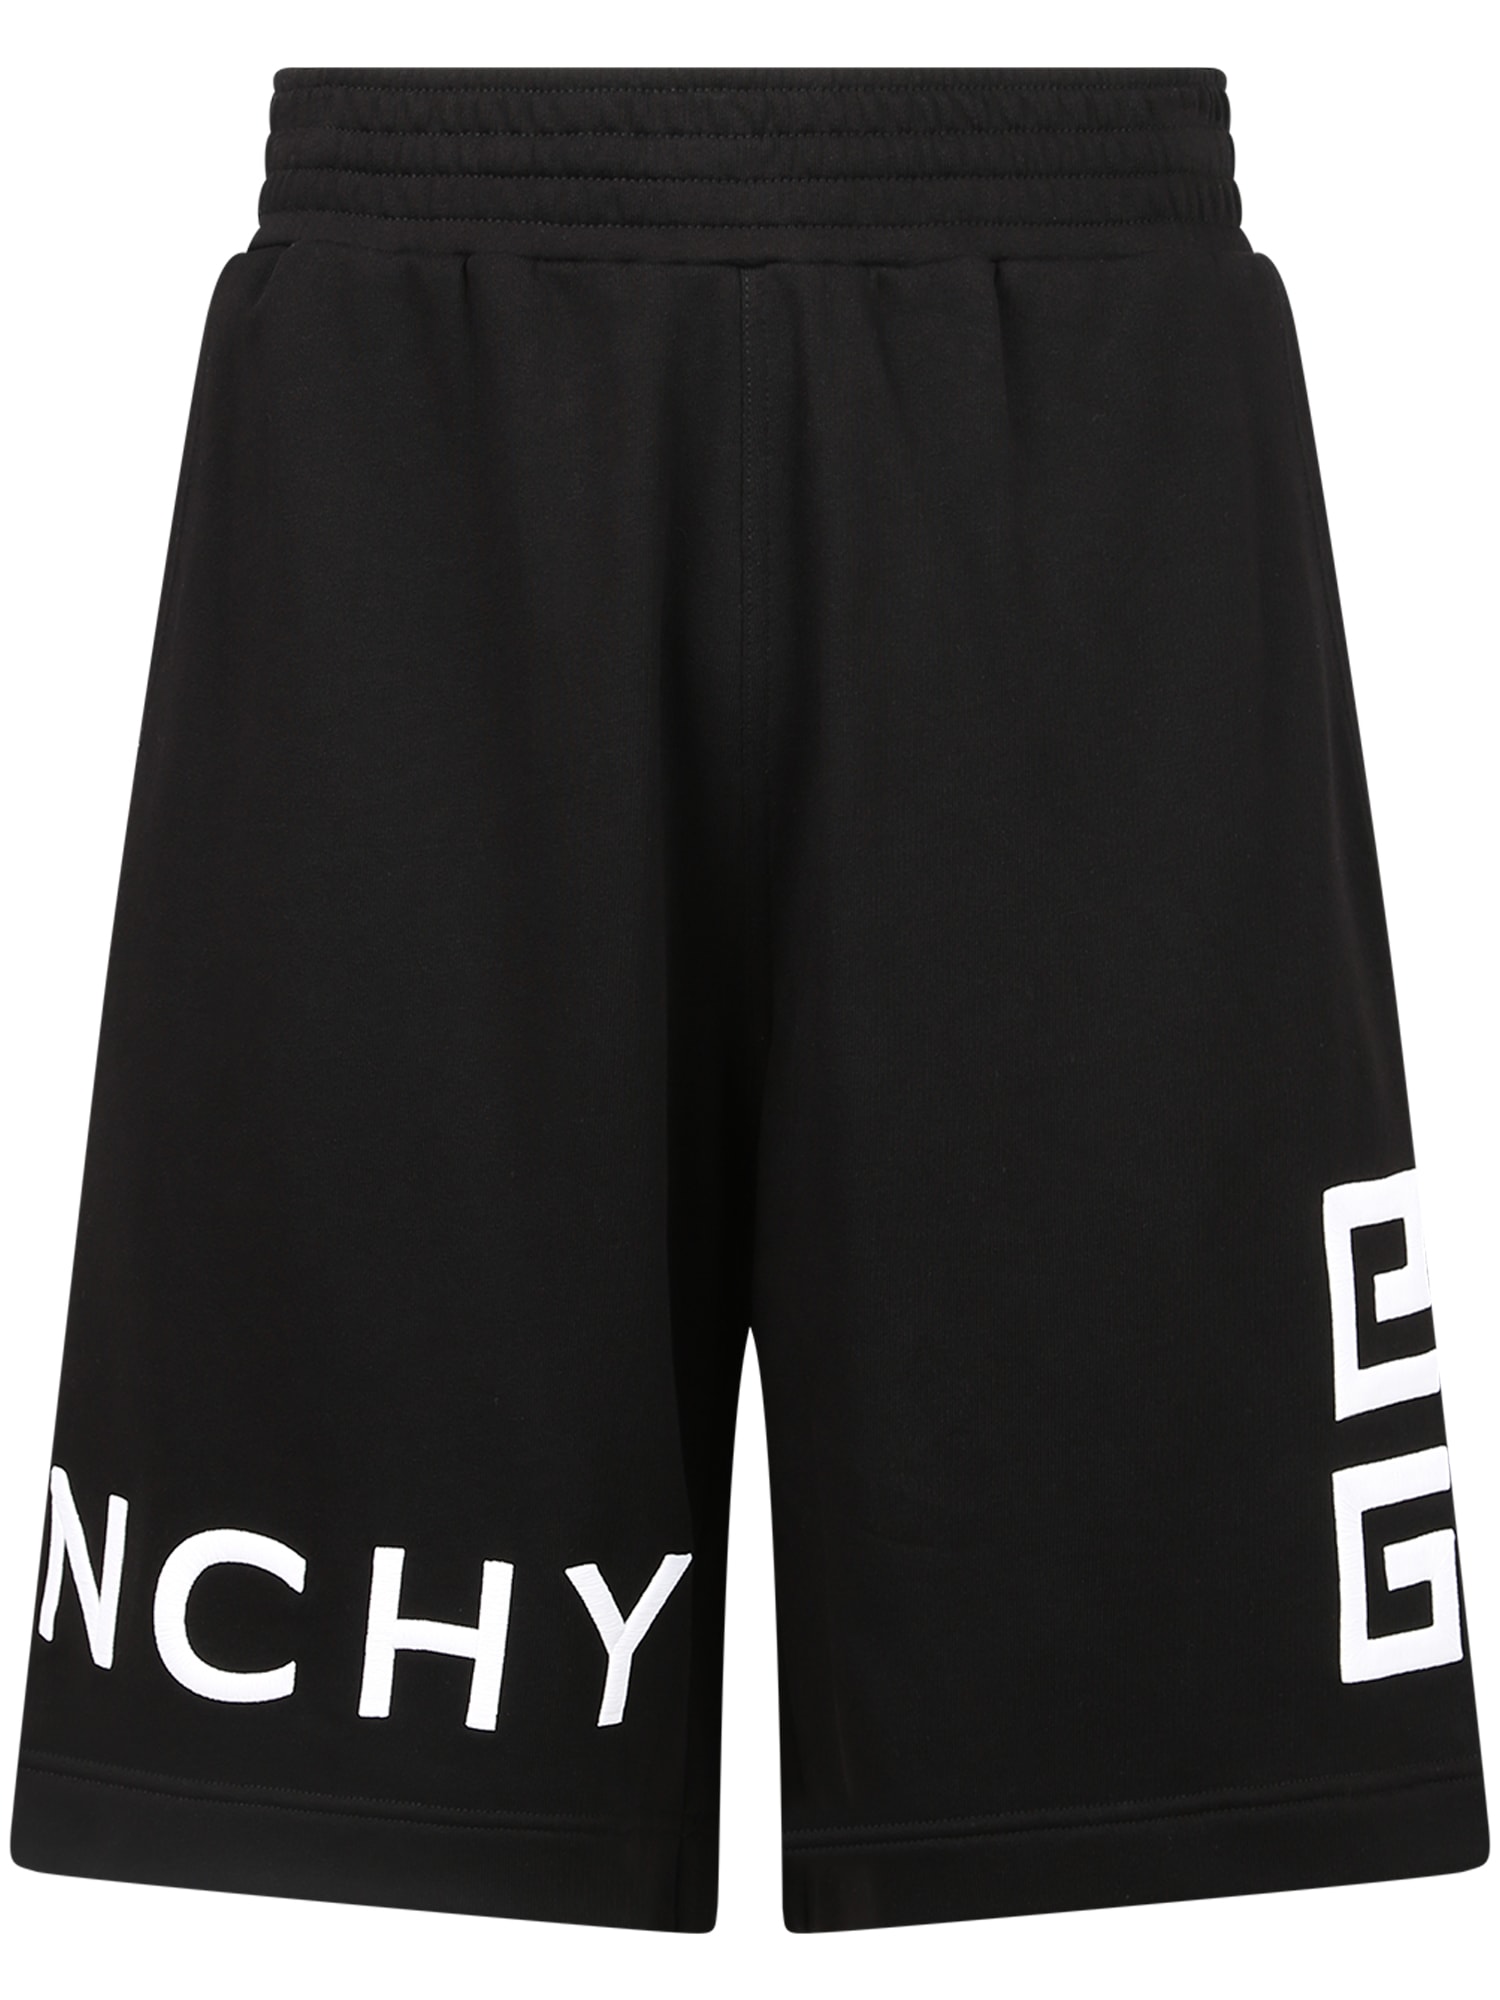 Givenchy Branded Bermuda Shorts